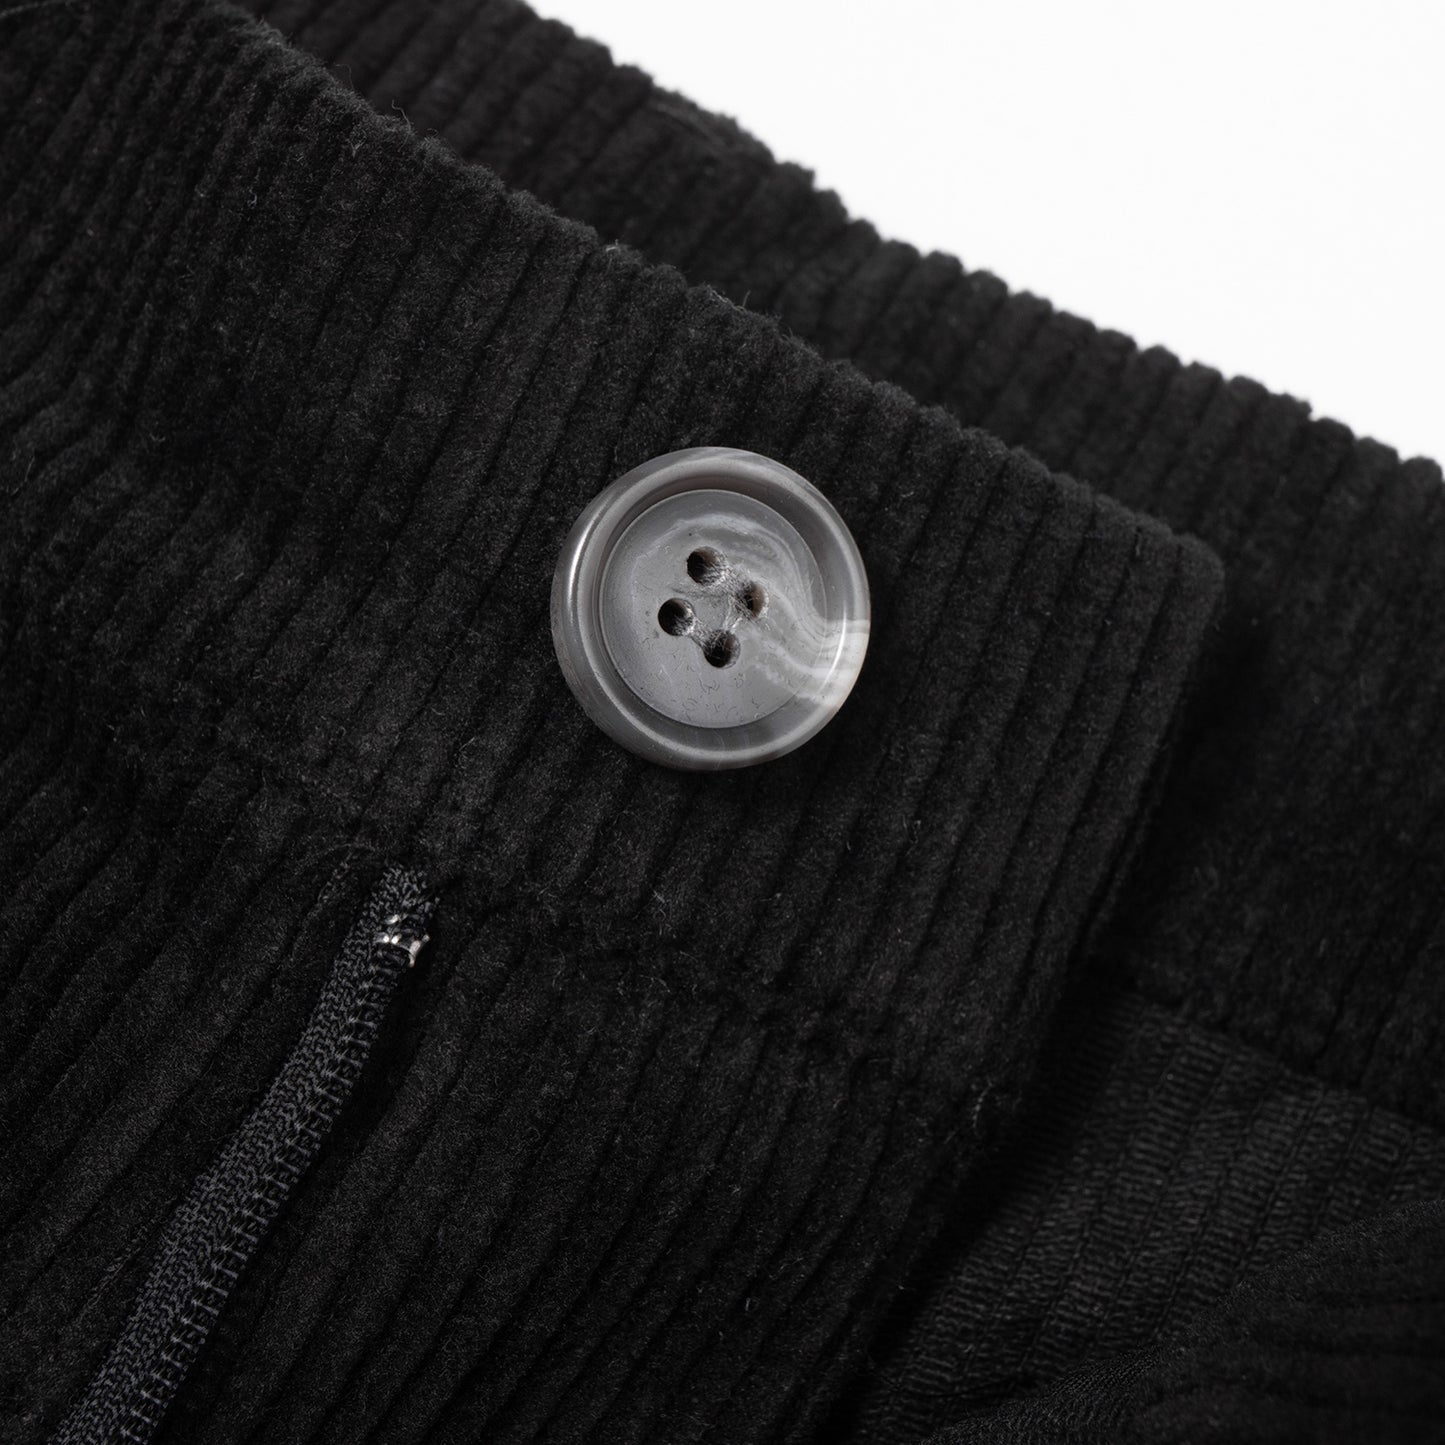 Pants Velvet Series model 2 , Black